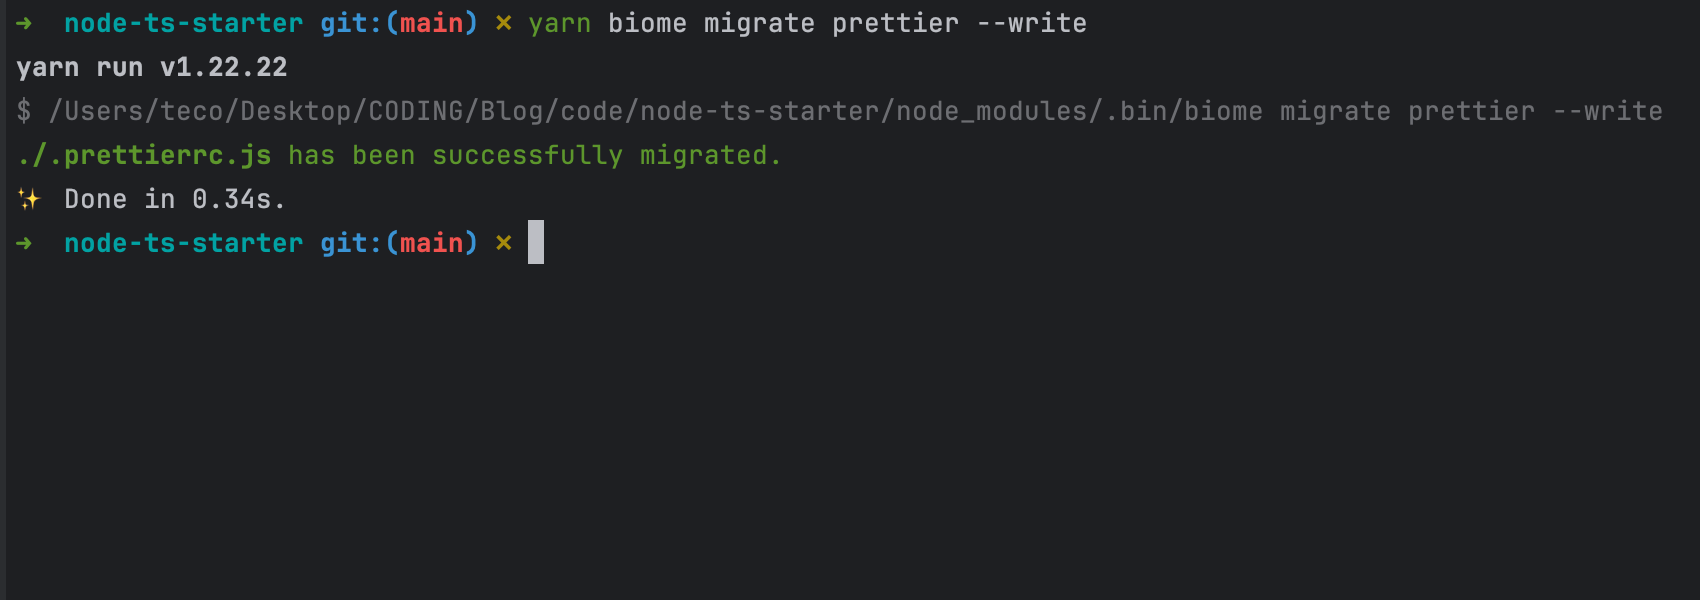 Migrate the Prettier configuration files to Biome.